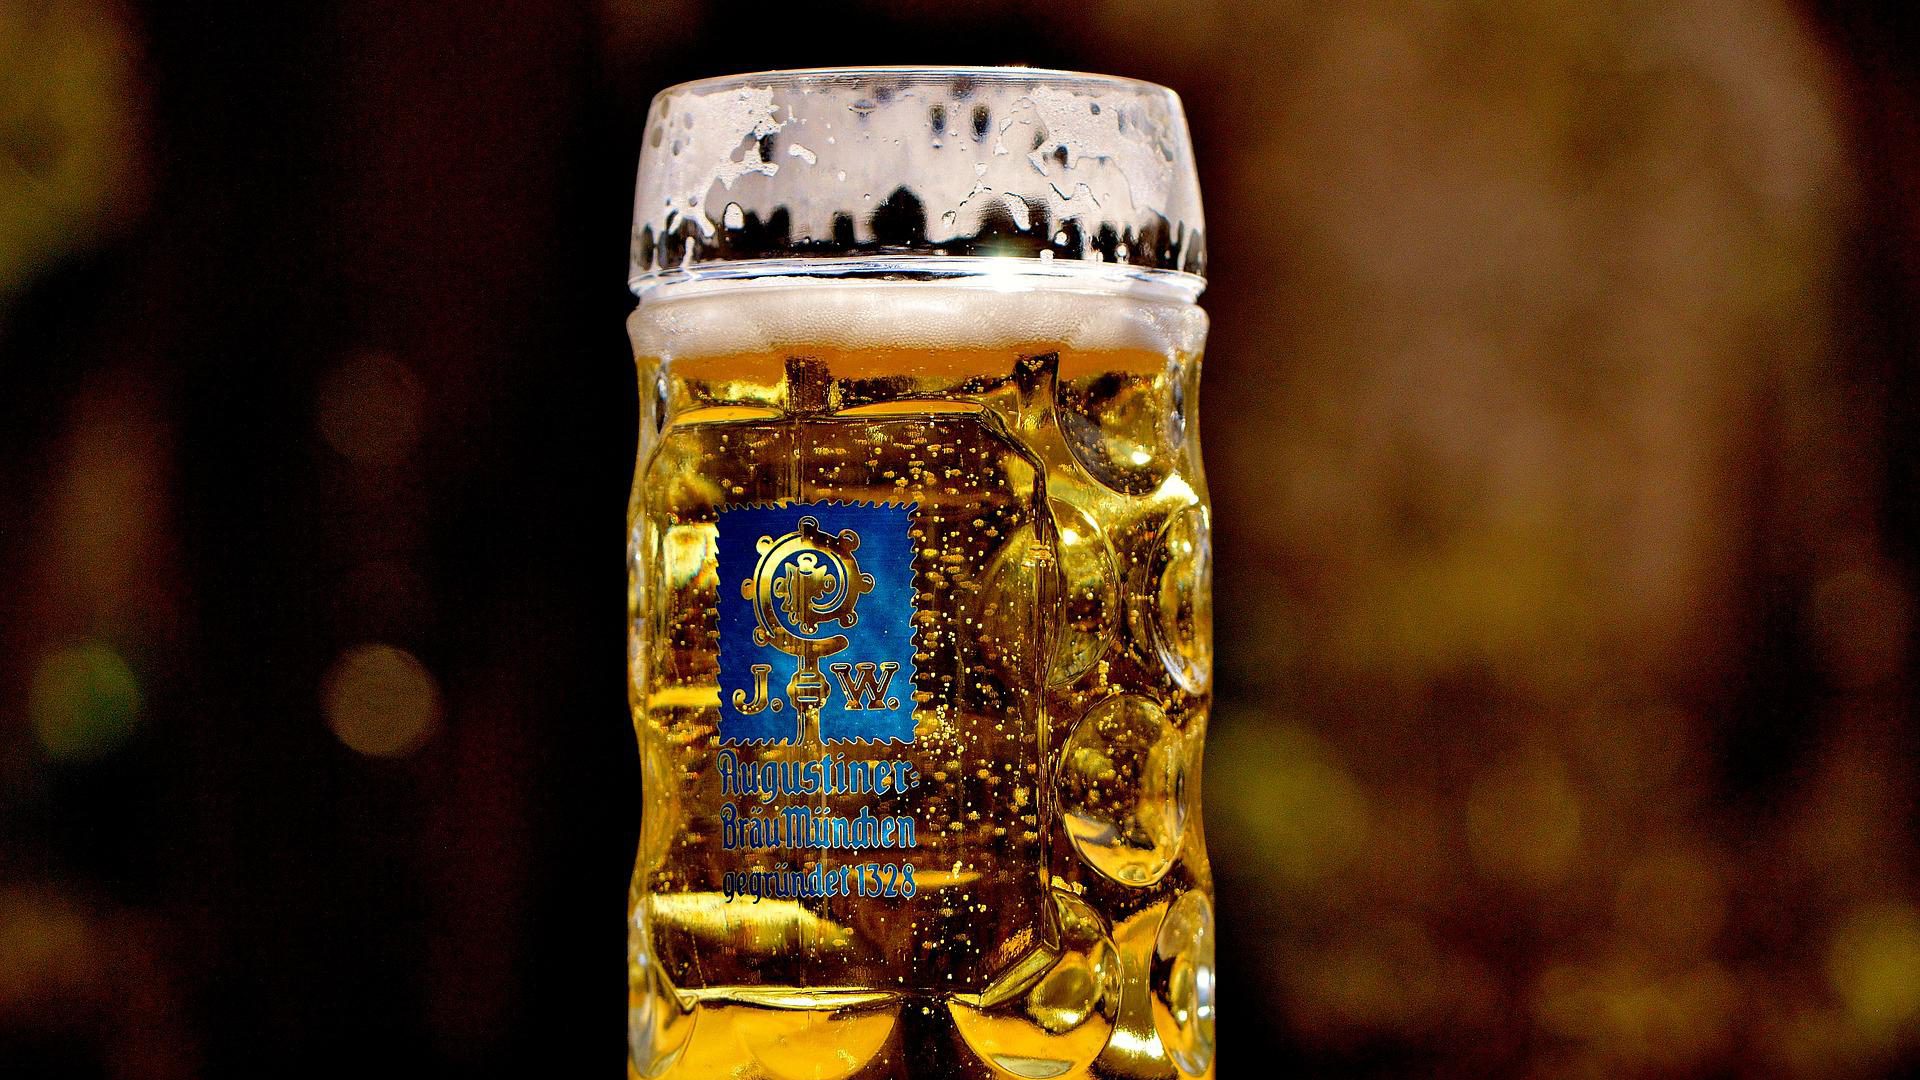 Bier in München https://pixabay.com/de/photos/bier-ma%C3%9Fkrug-erfrischung-bierkrug-2439238/